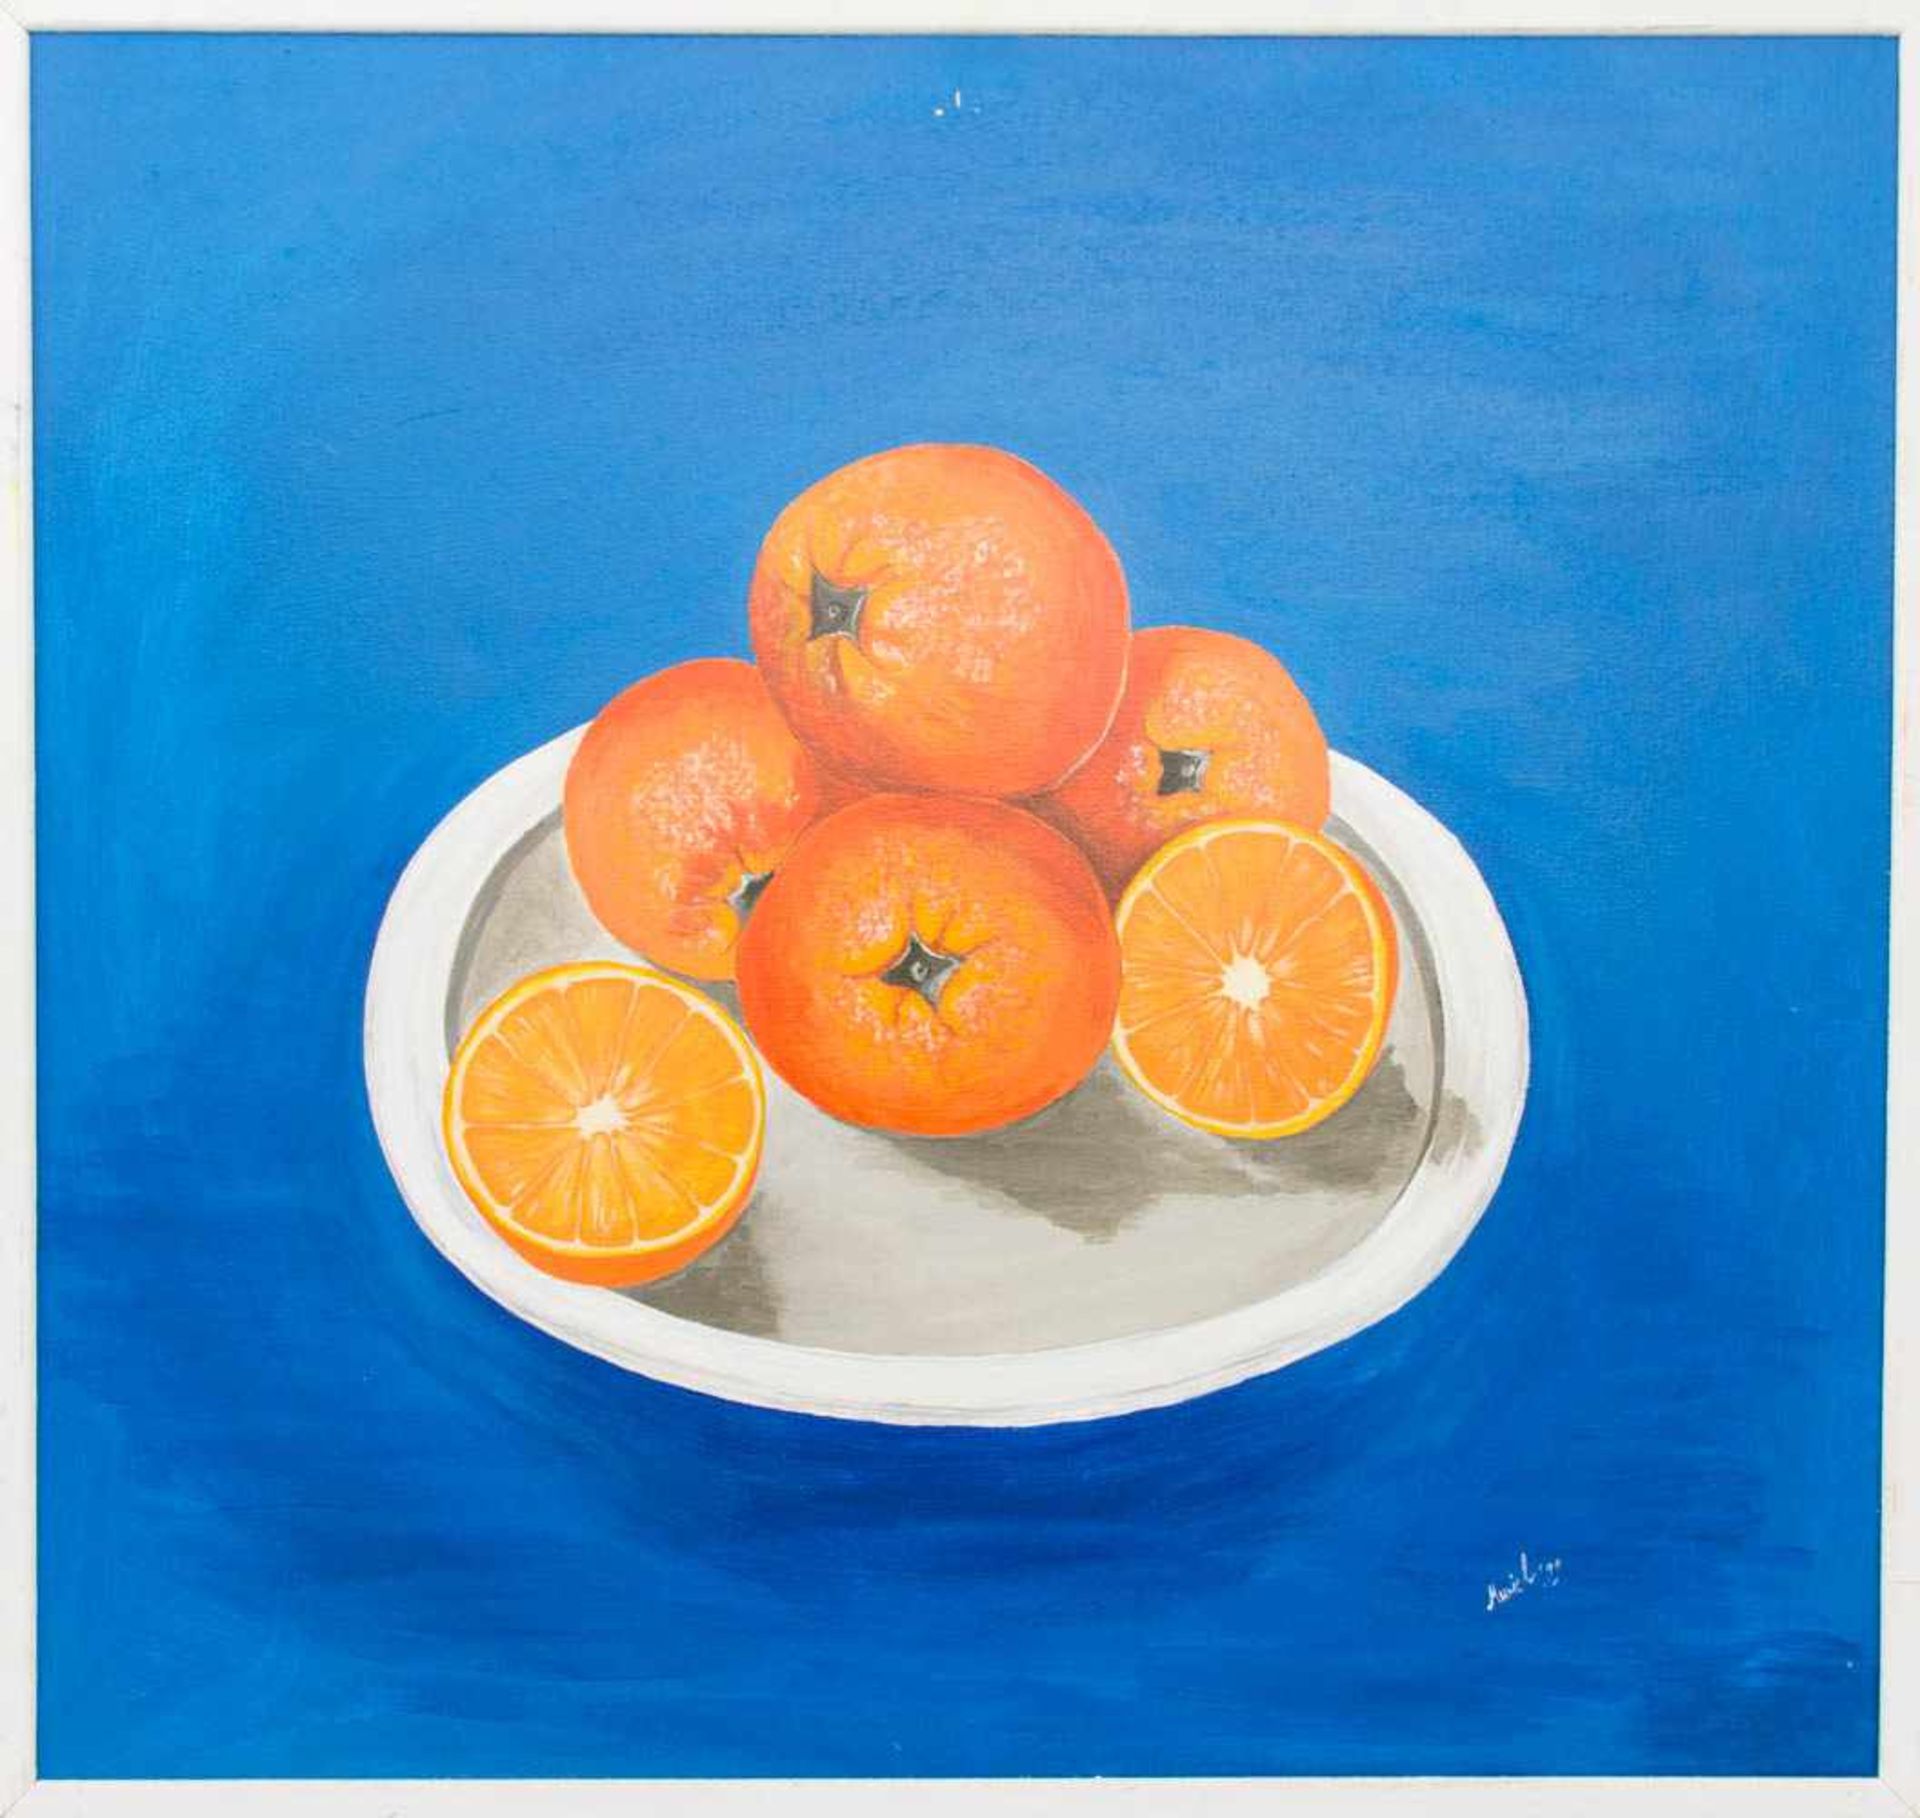 Sig. MURIEL, Orangen auf blauem Grund, Öl / LW, 1999.86 x 82 cm- - -20.00 % buyer's premium on the